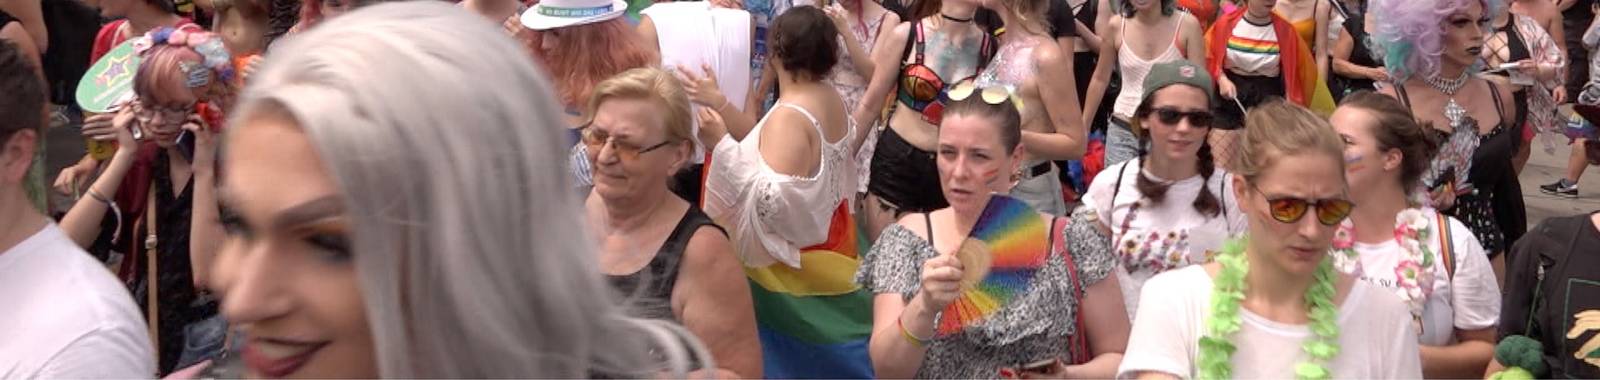 Europride: So heiß war die Regenbogenparade